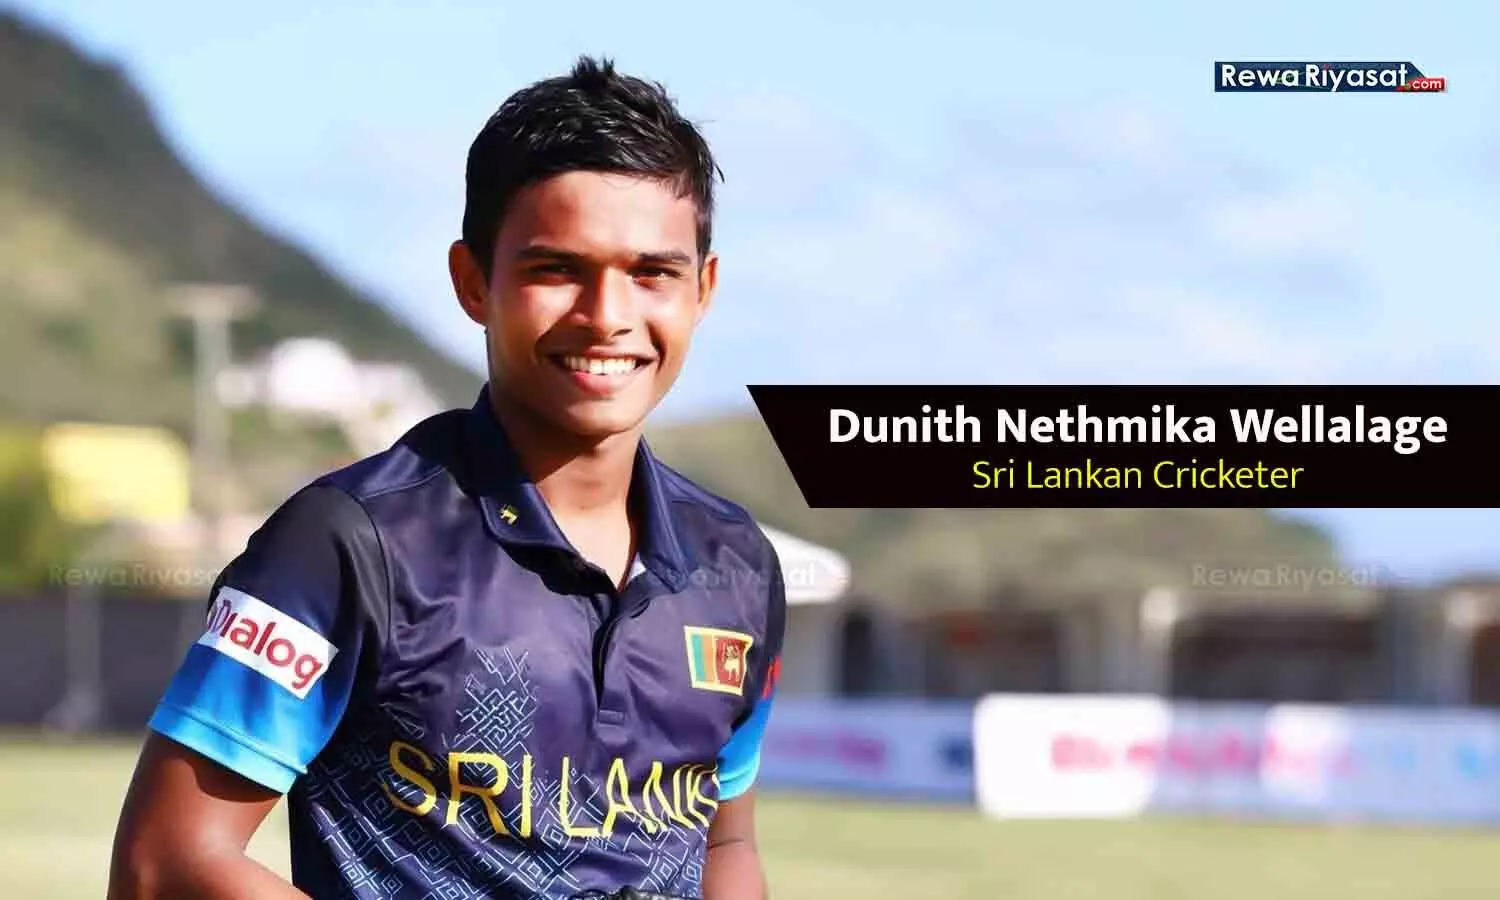 IND Vs SL: जानिए कौन हैं 20 साल के श्रीलंकाई स्पिनर दुनिथ वेल्लालागे, जिन्होंने रोहित, कोहली समेत भारत के 5 बल्लेबाजों के उड़ा डाले विकेट